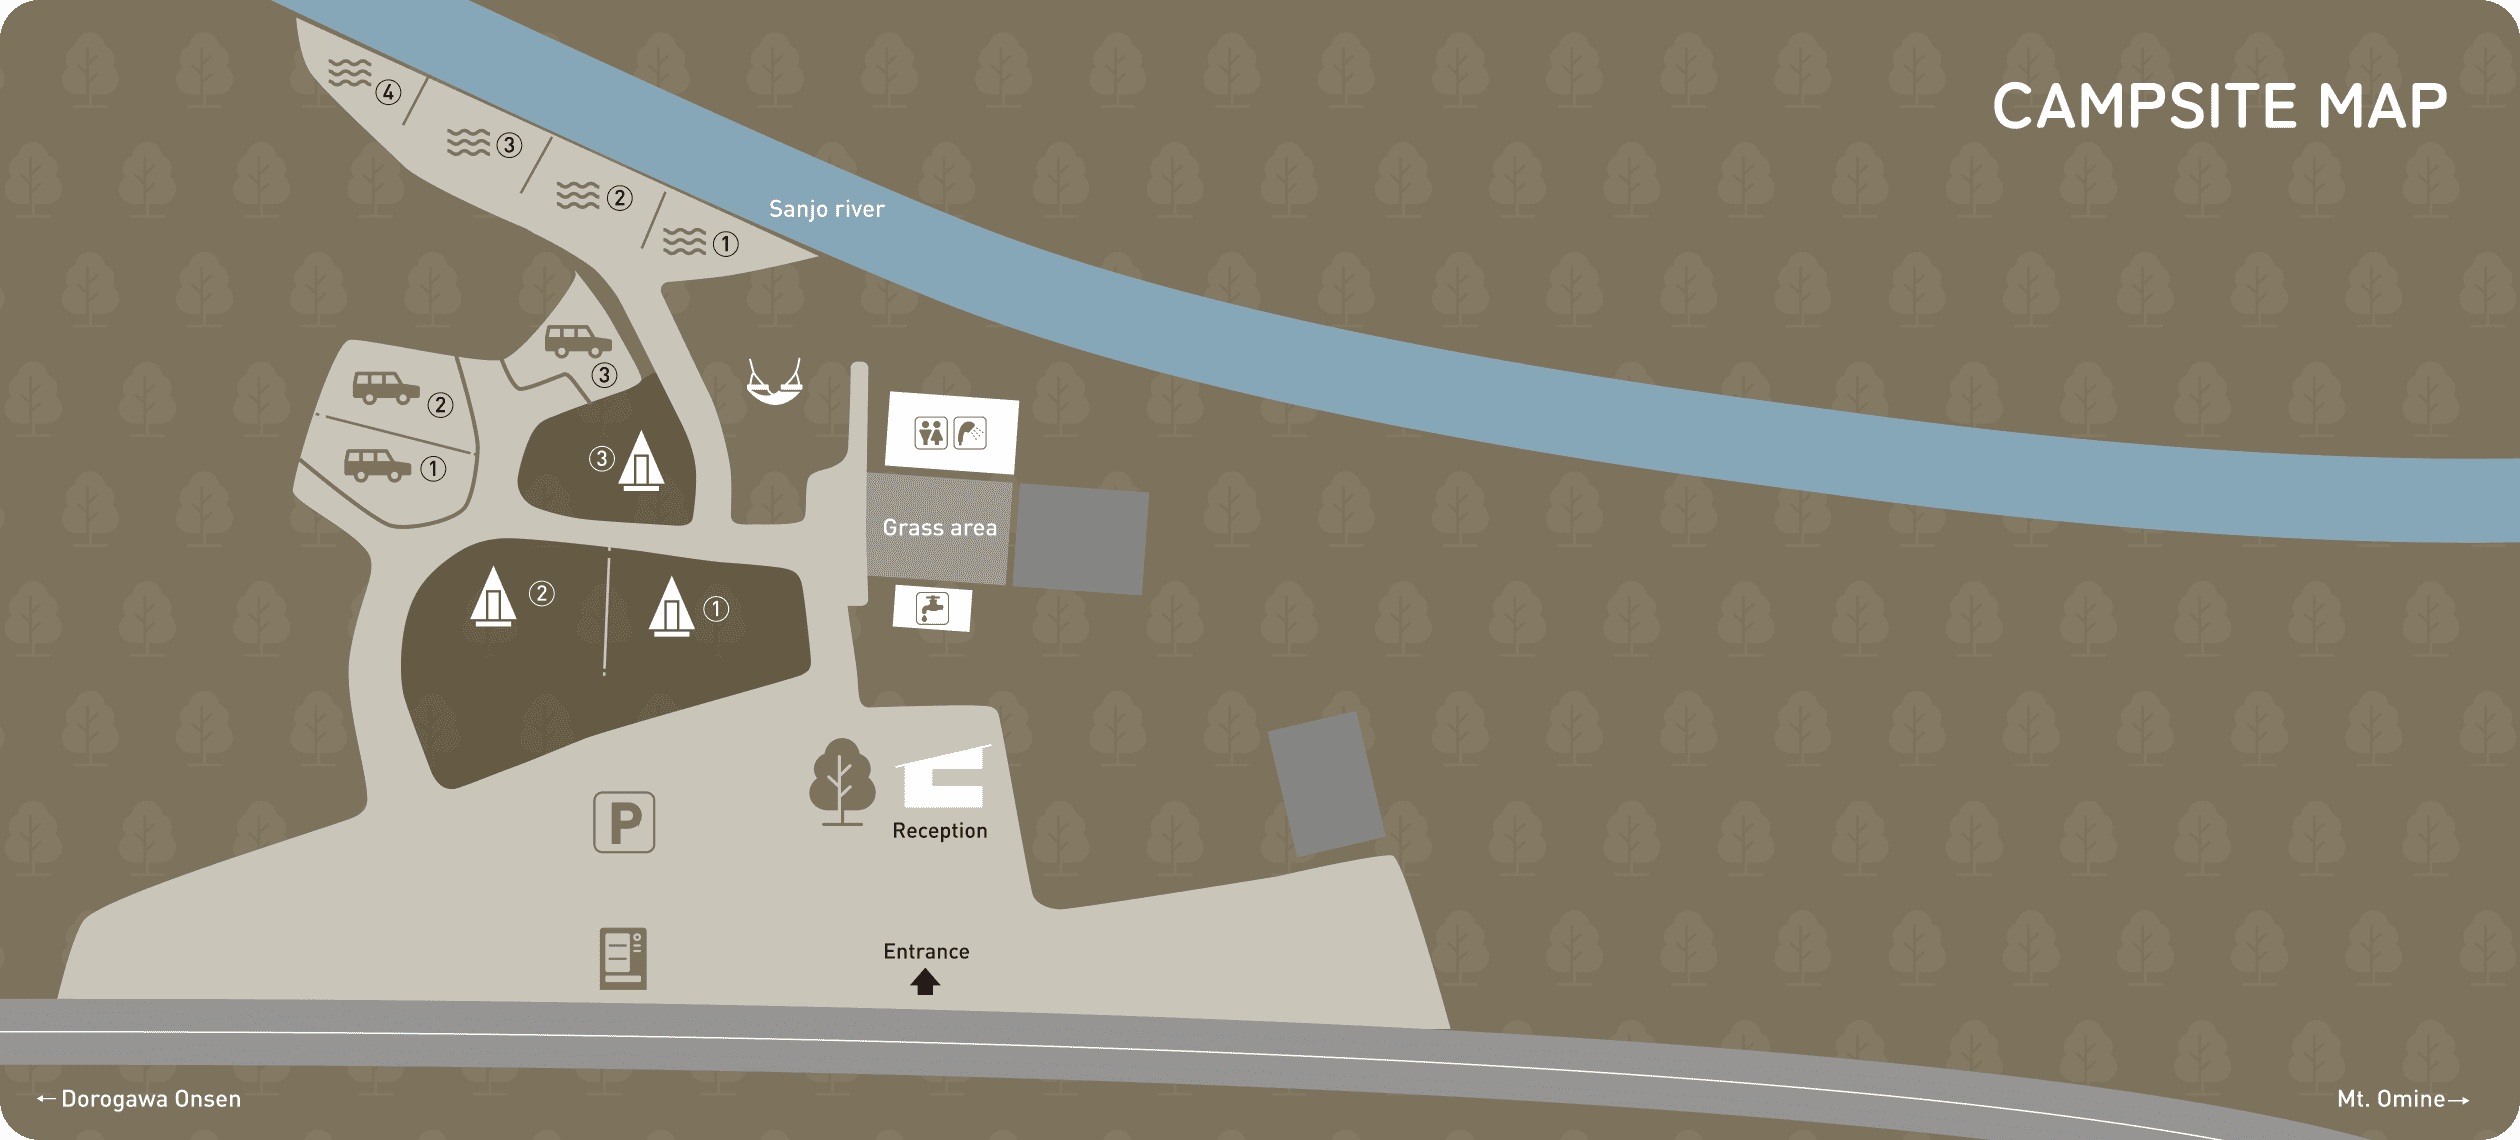 CAMPSITE MAP